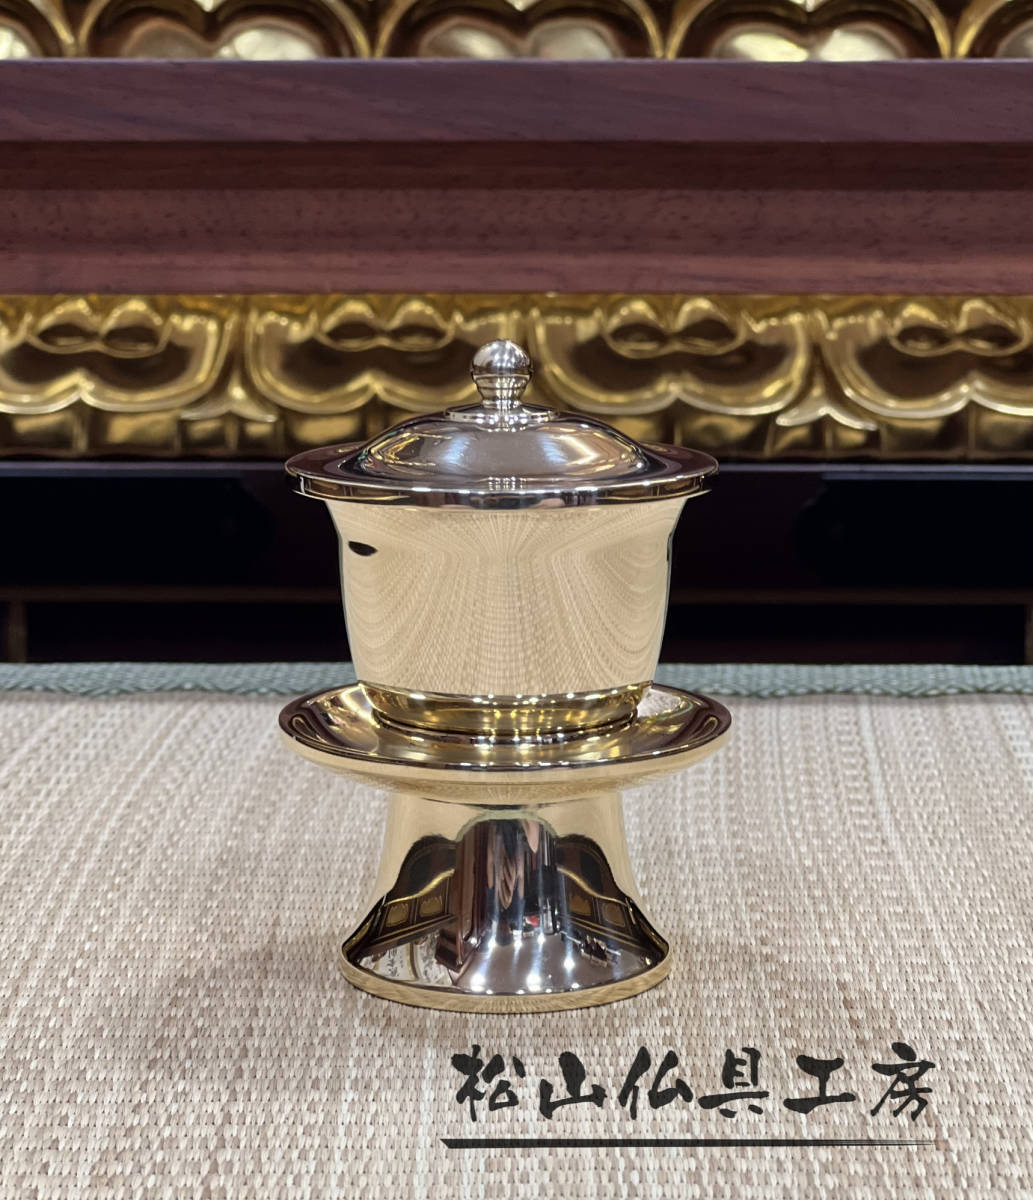 公式の 「松山仏具工房出品」密教法具 茶湯器 真鍮製磨き仕上げ 仏具